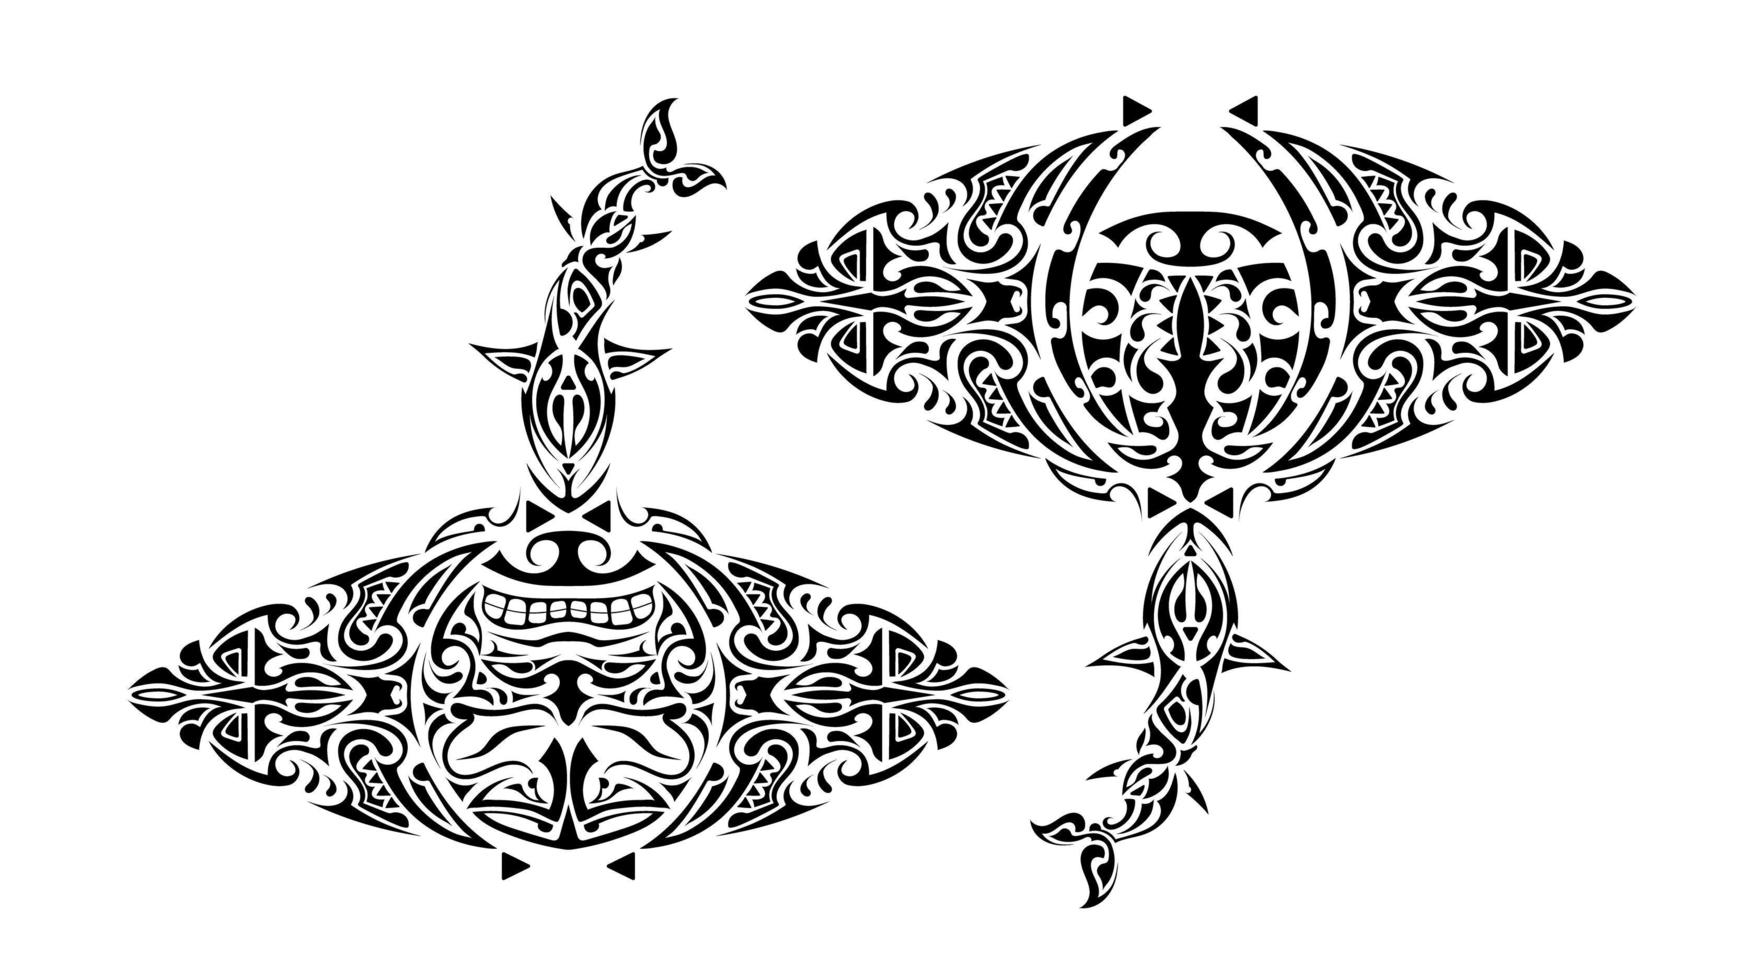 pijlstaartrog Polynesische stijl. pijlstaartrog-tatoeage in Polynesische stijl. goed voor tatoeages, prints en t-shirts. geïsoleerd. vector. vector